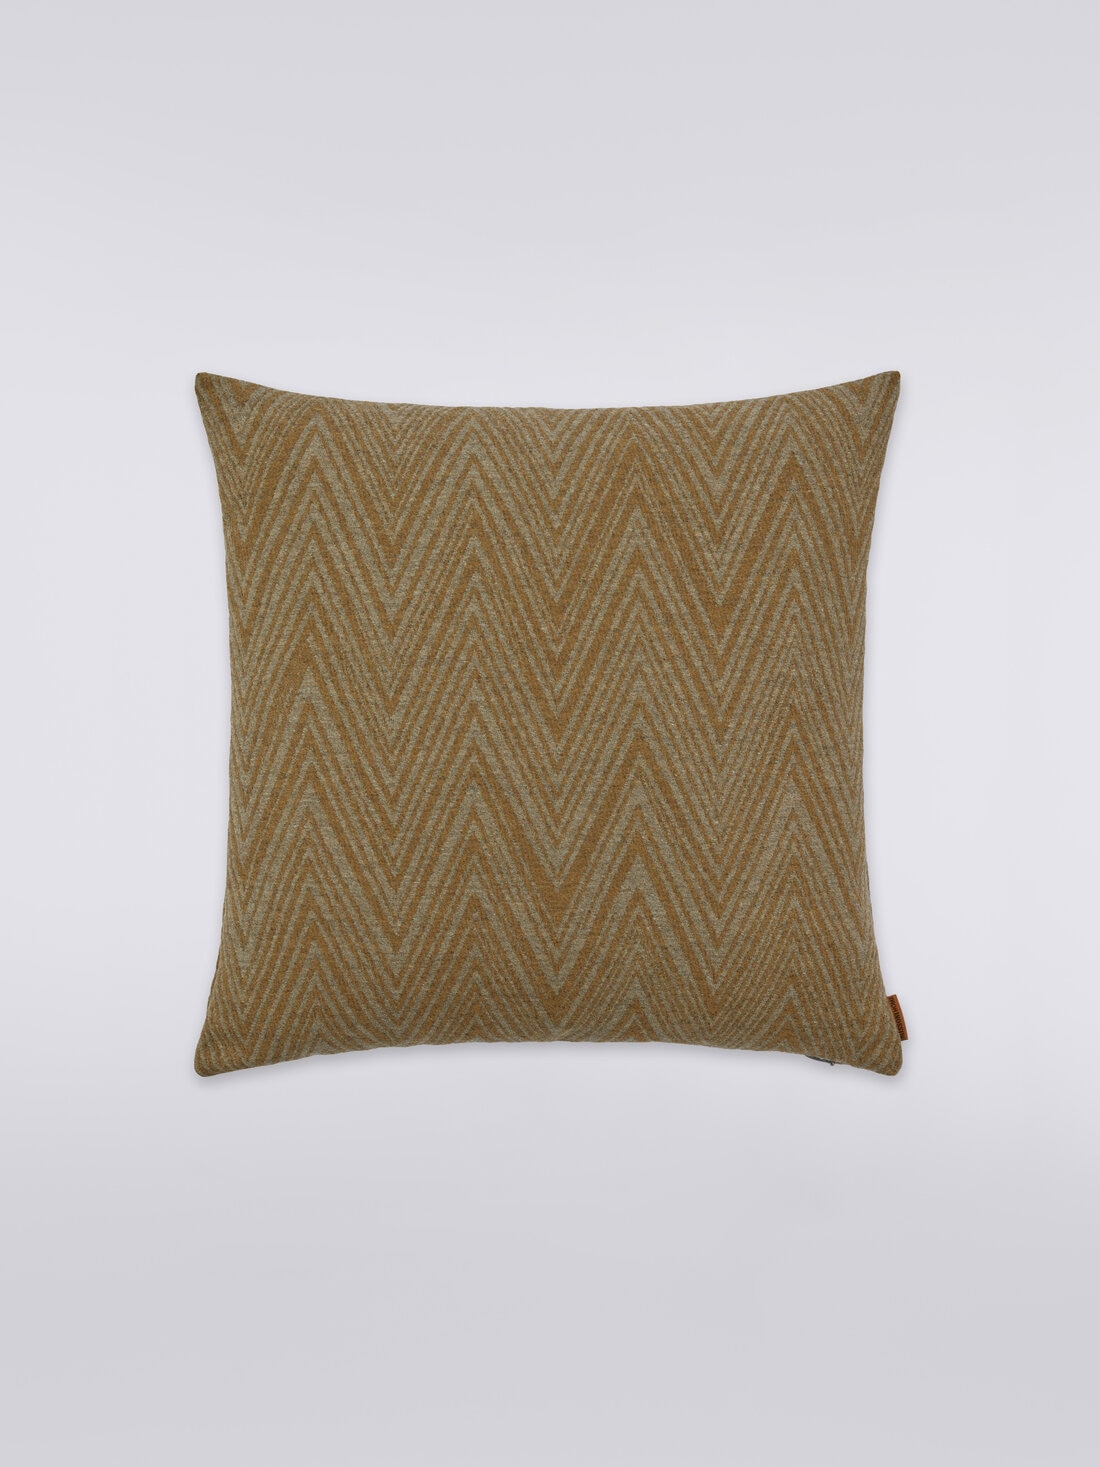 Bridgetown cushion 40x40 cm, Multicoloured  - 8051275582137 - 0